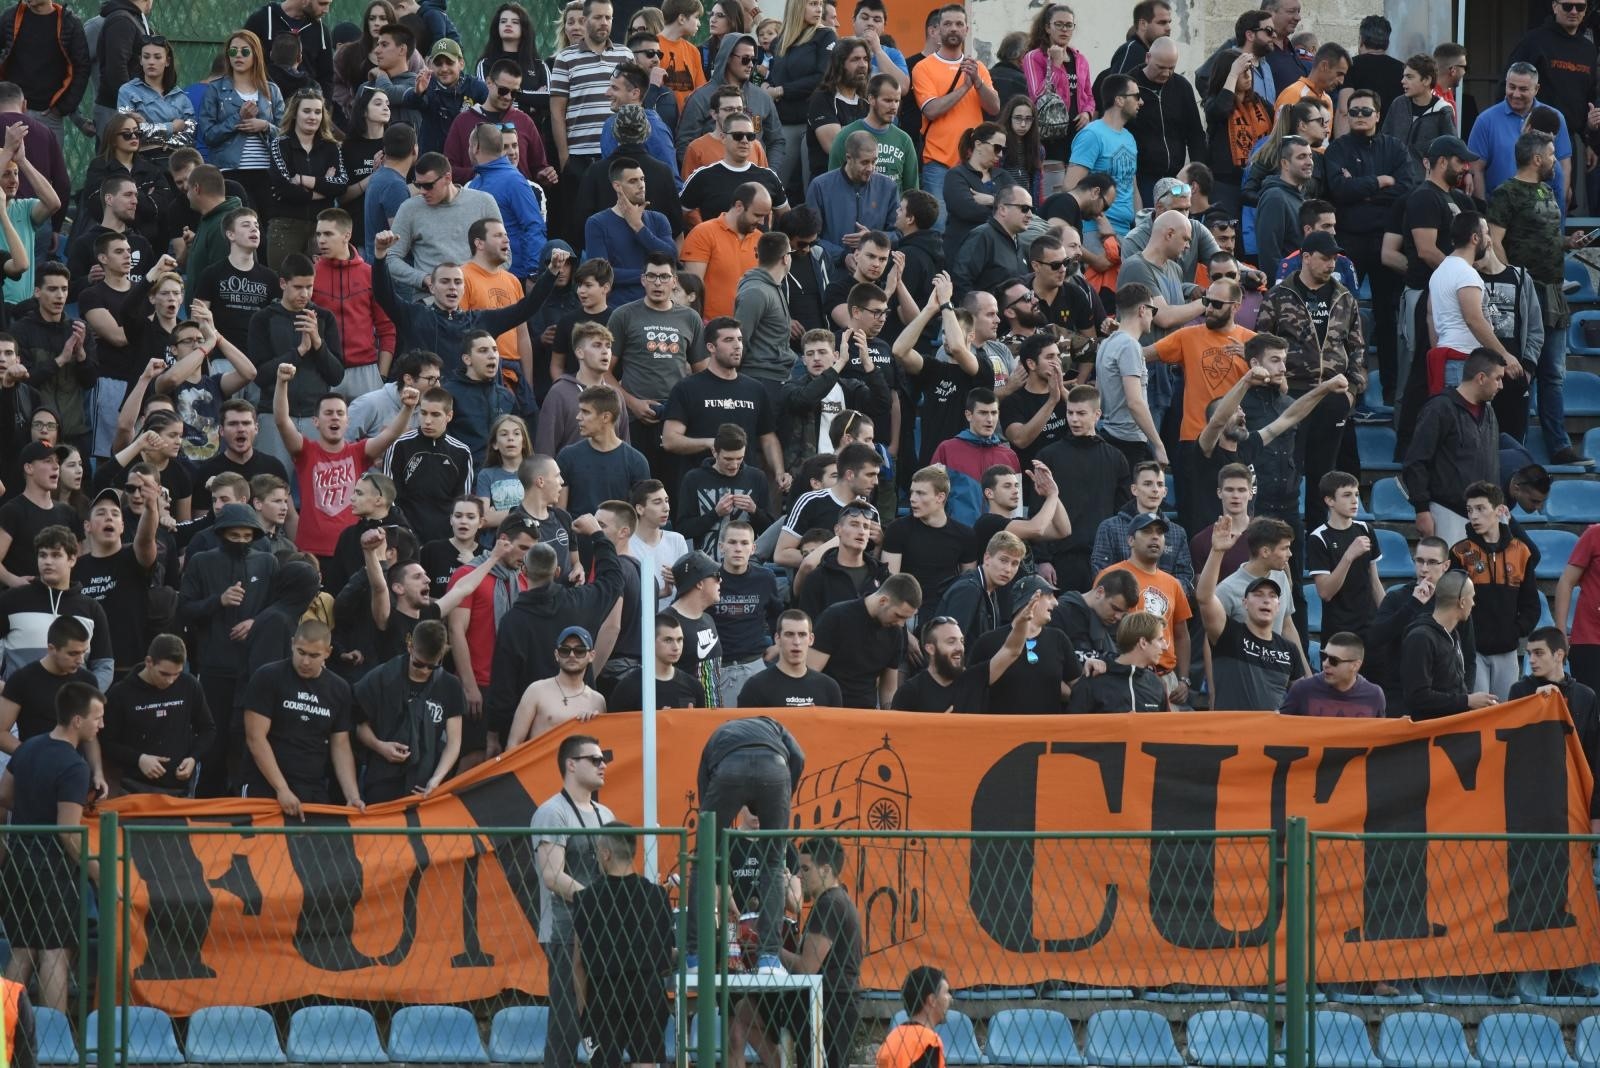 31.05.2019., Sibenik - Stadion Subicevac - Kvalifikacije za ulazak u 1.HNL HNK Sibenik - NK Istra.
Photo: Hrvoje Jelavic/PIXSELL